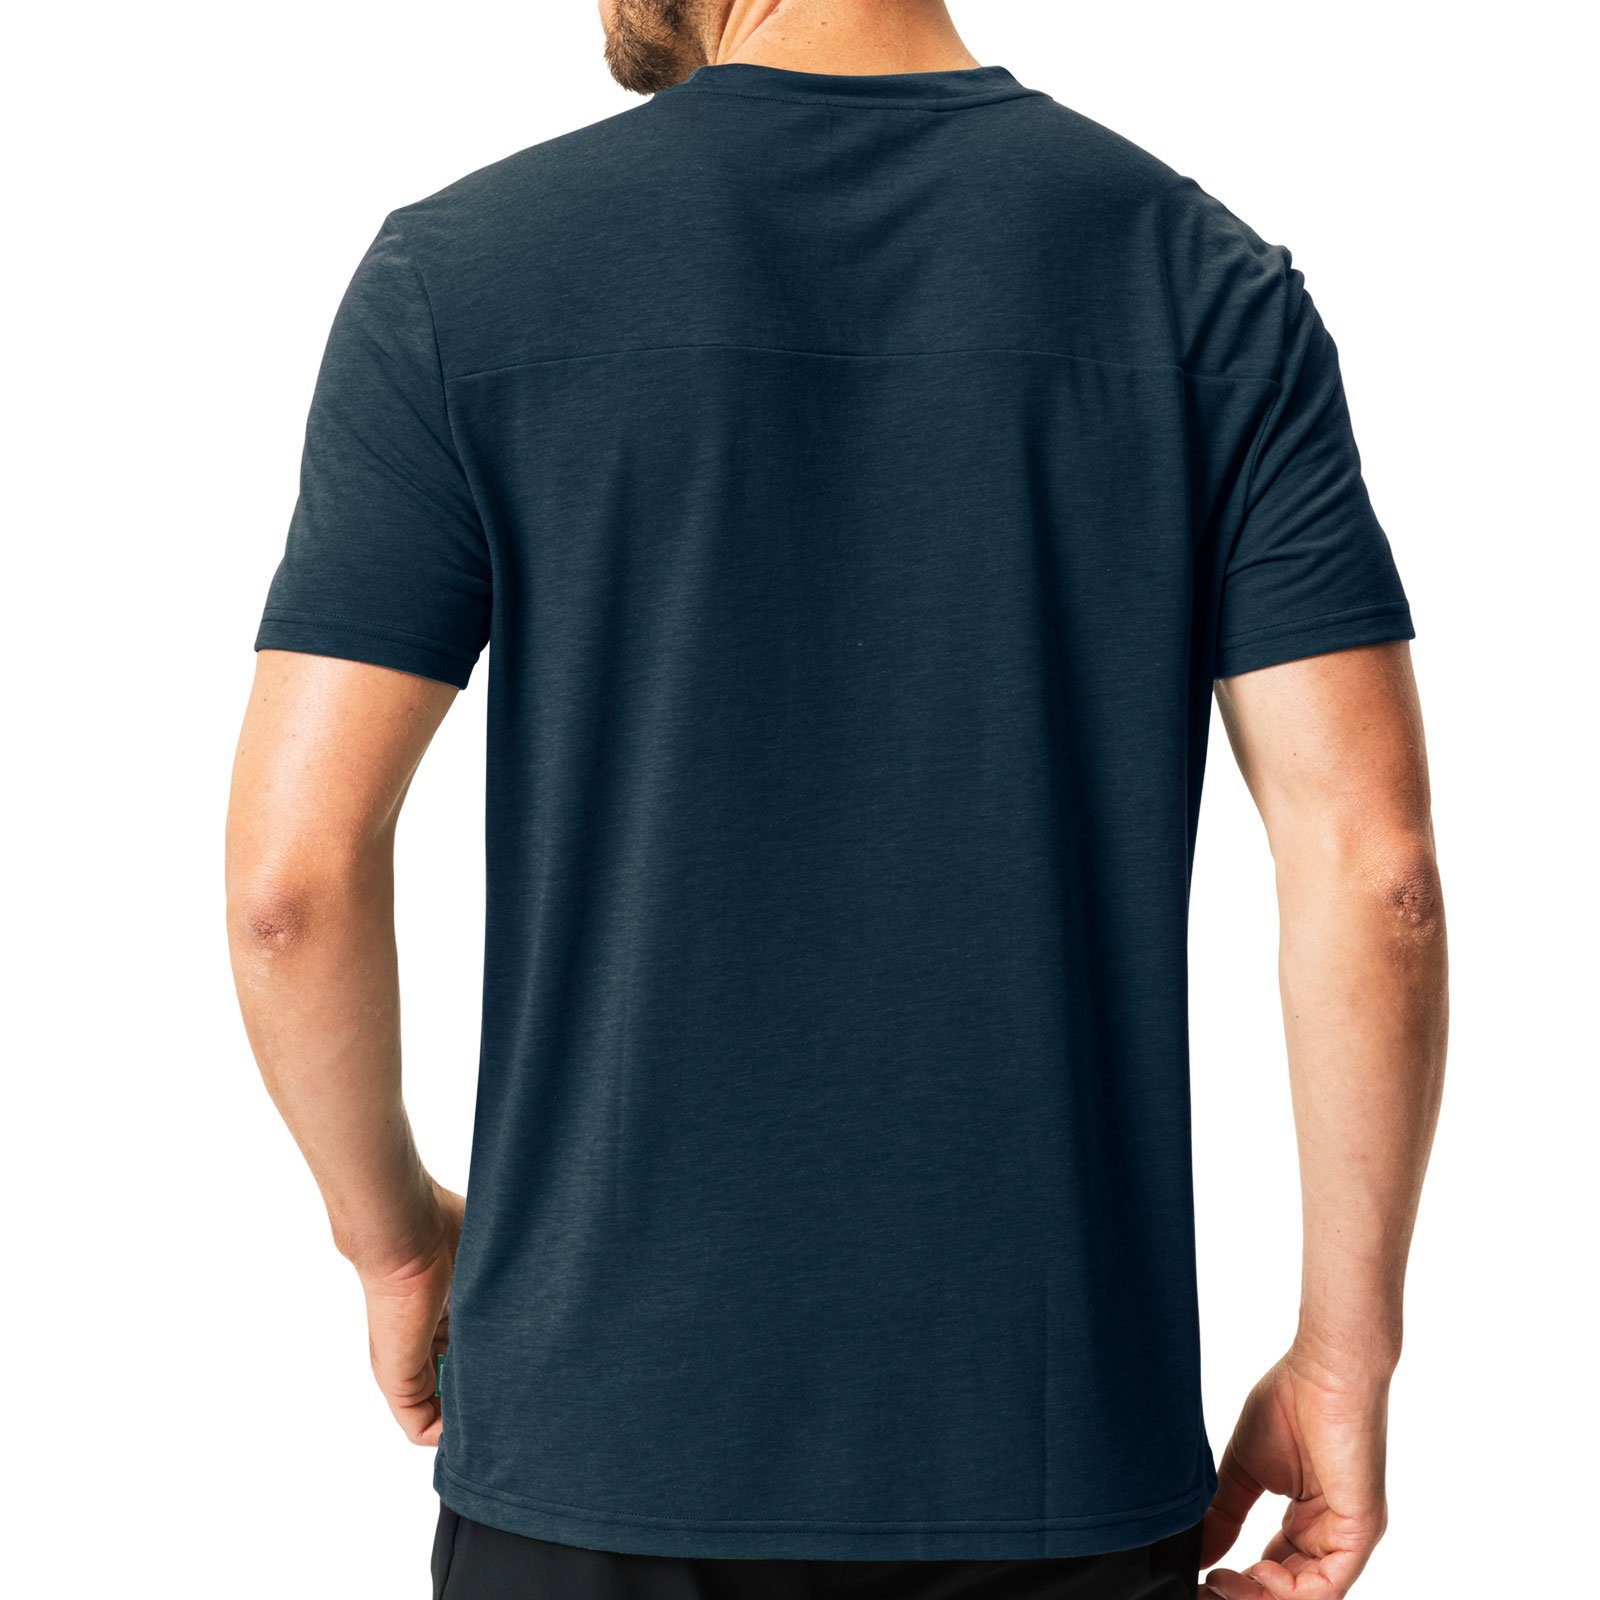 Holzfasern T-Shirt sea blue / 25% hergestellt aus dark 42770-241 Tekoa VAUDE zu T-Shirt III